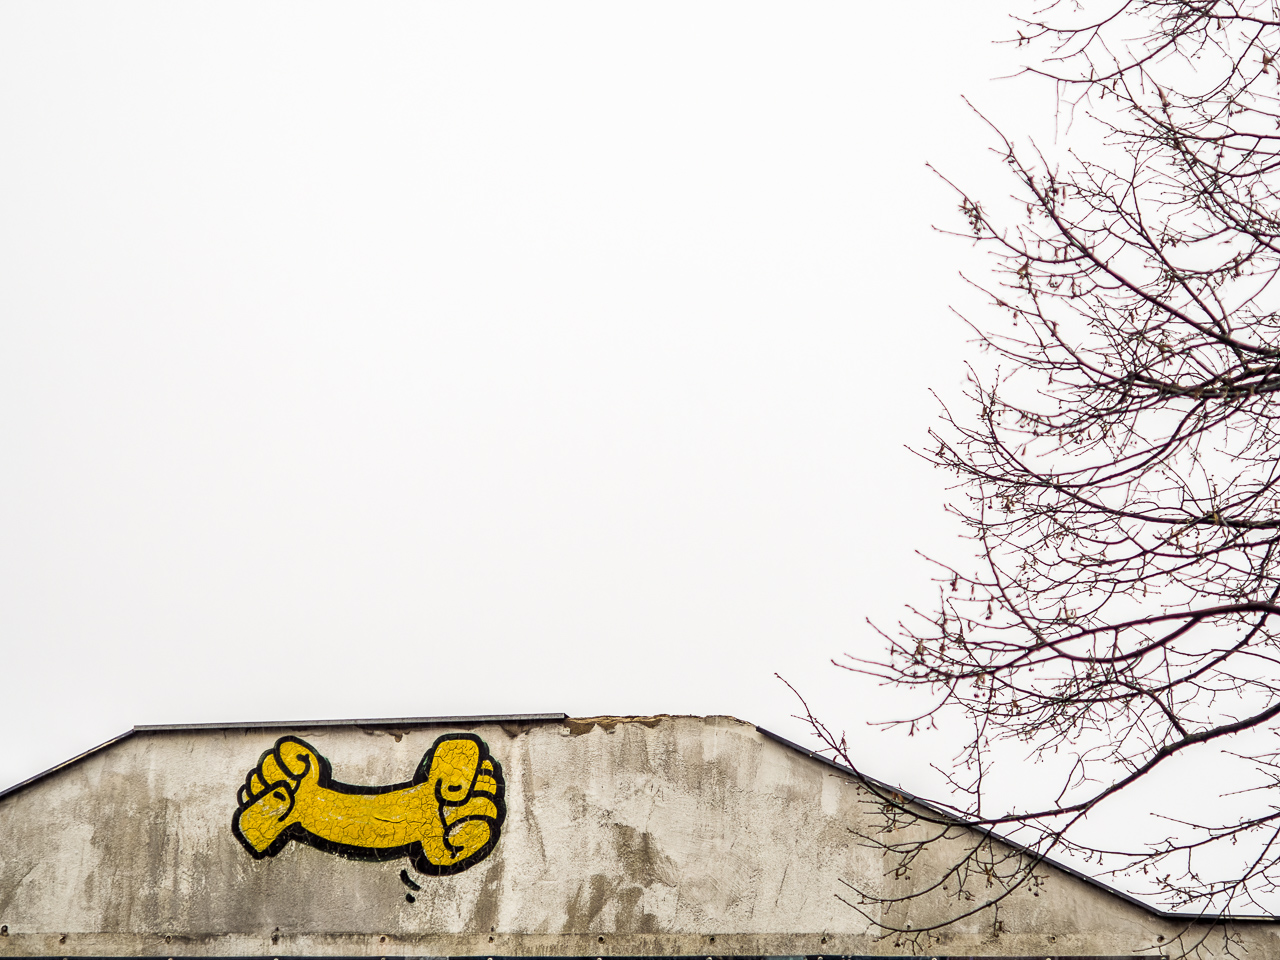 Weiße Hausmauer vor weißem Himmel, auf der Wand ein gelbes Graffito: Ein Arm, der an beiden Seiten je eine geballte Faust hat